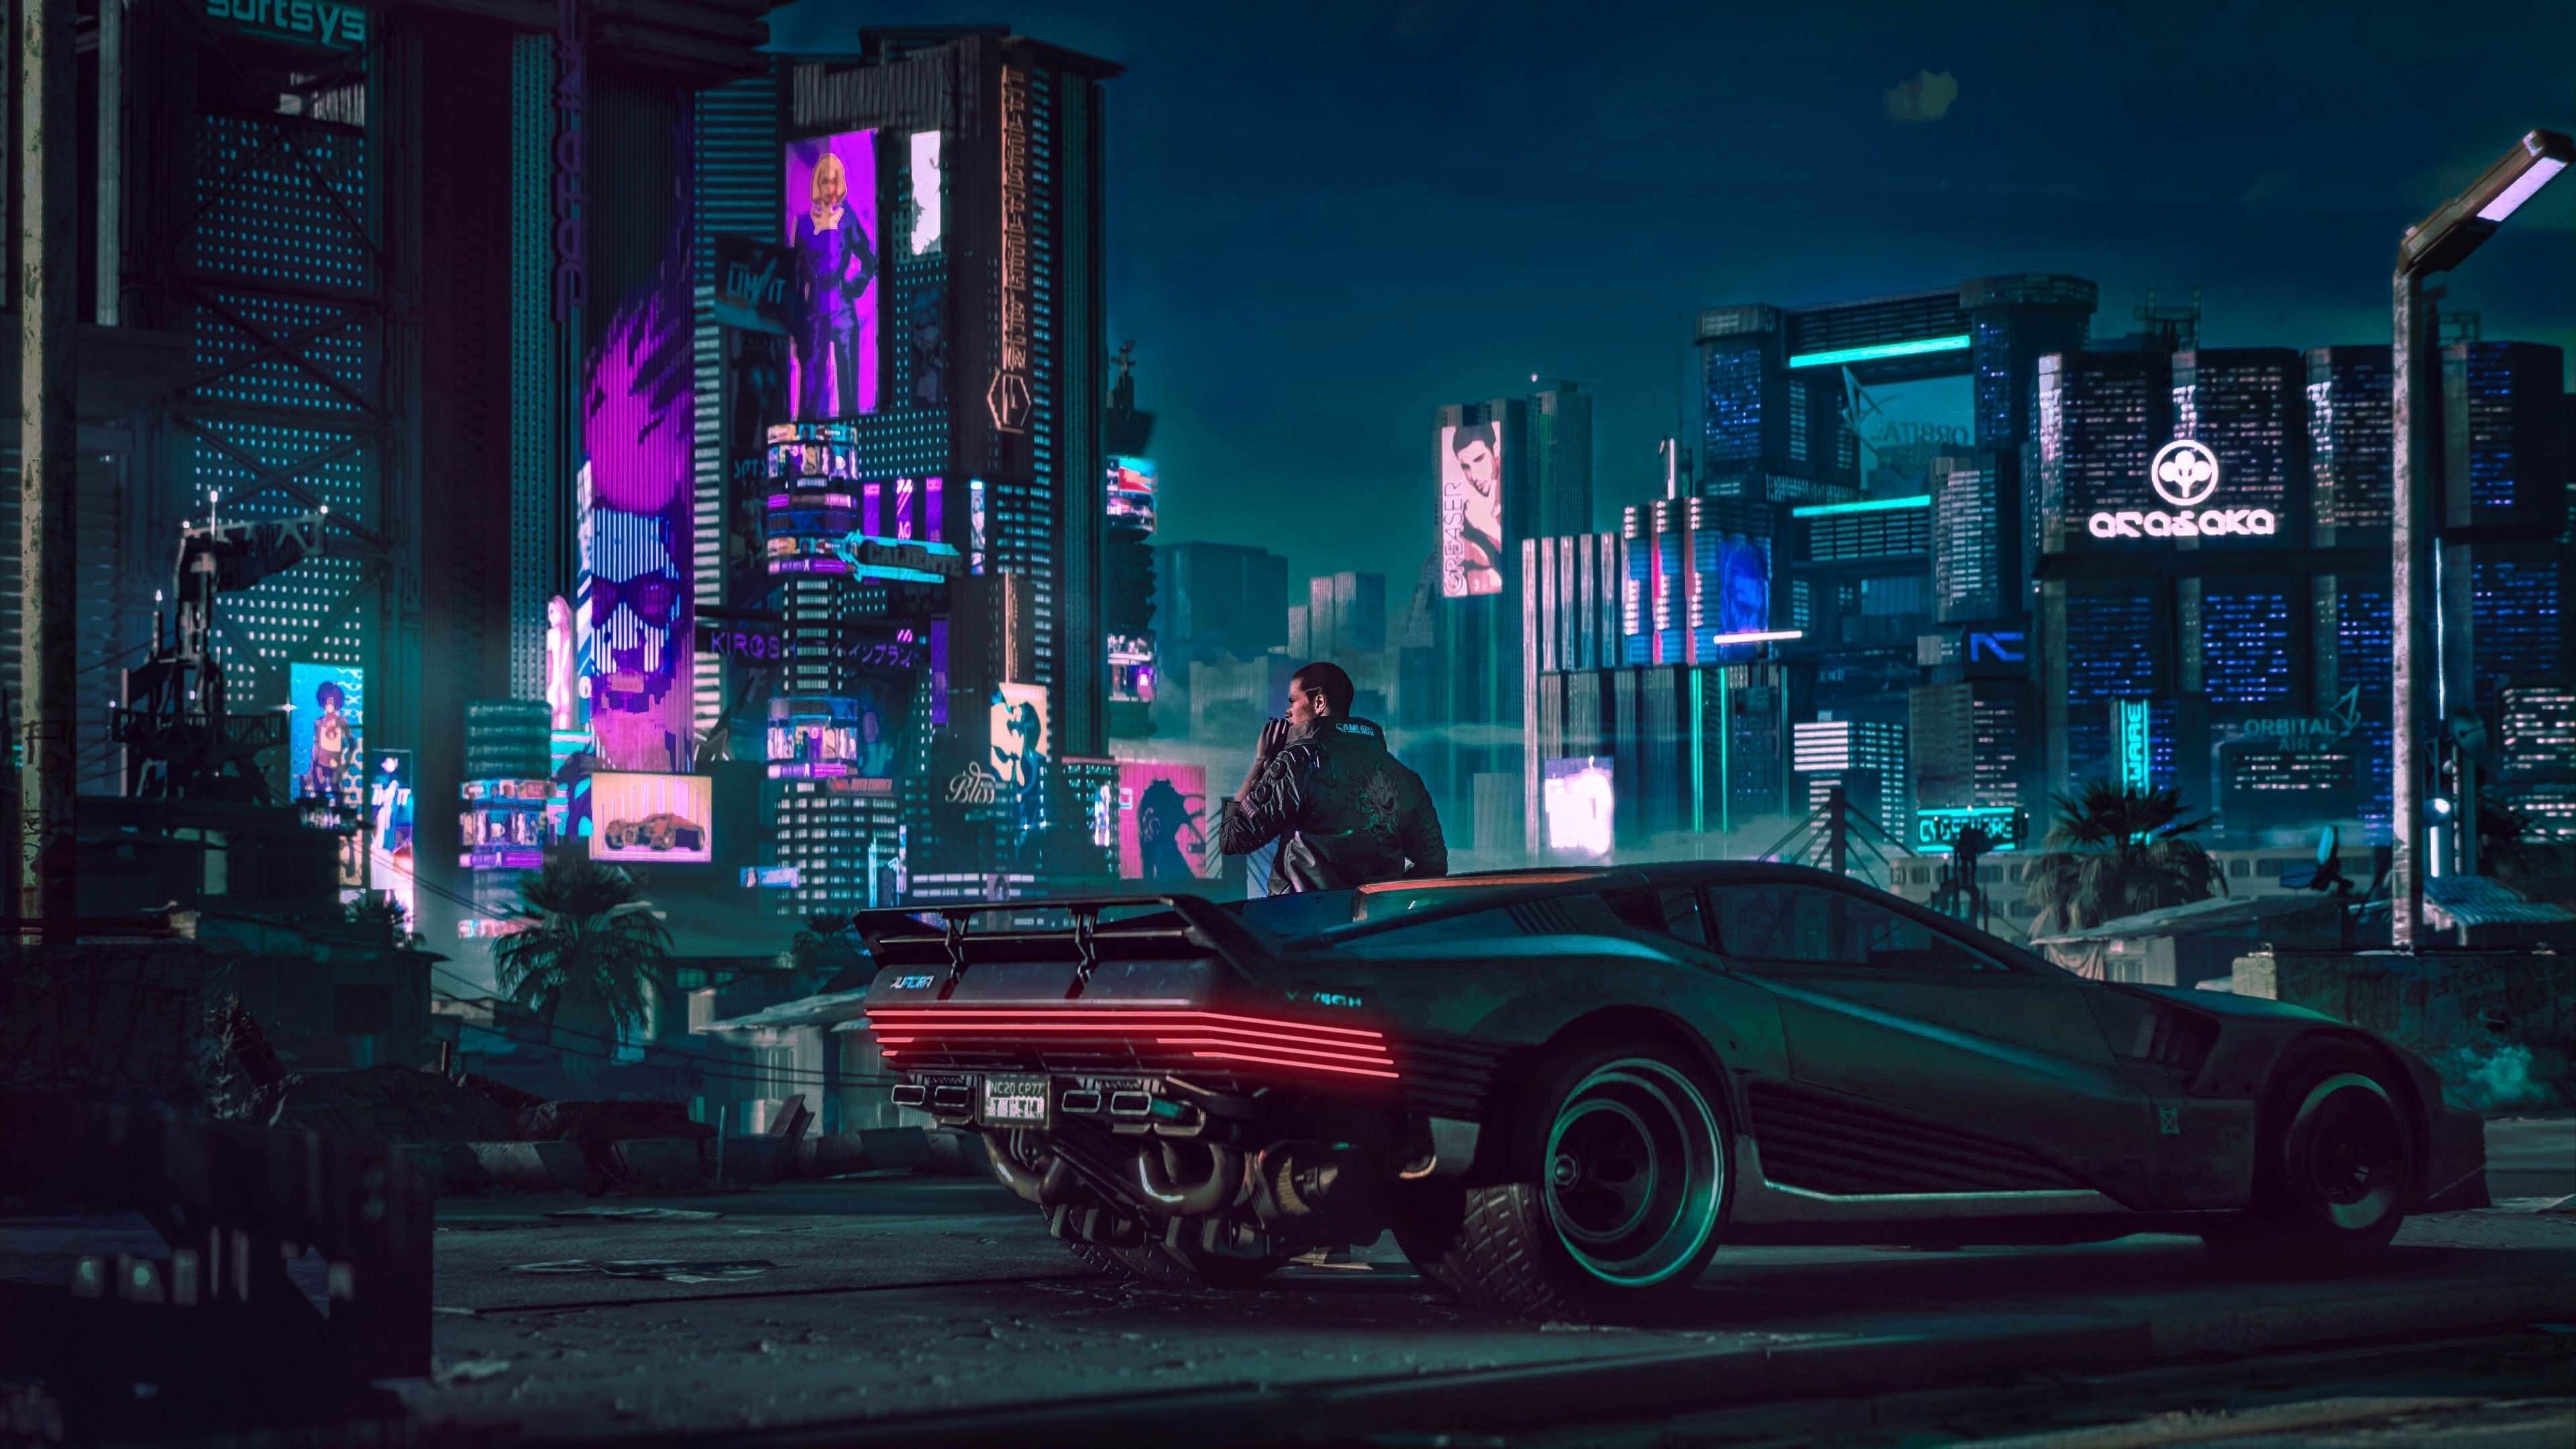 Cyberpunk Car wallpaper. Futuristic city, Cyberpunk Digital